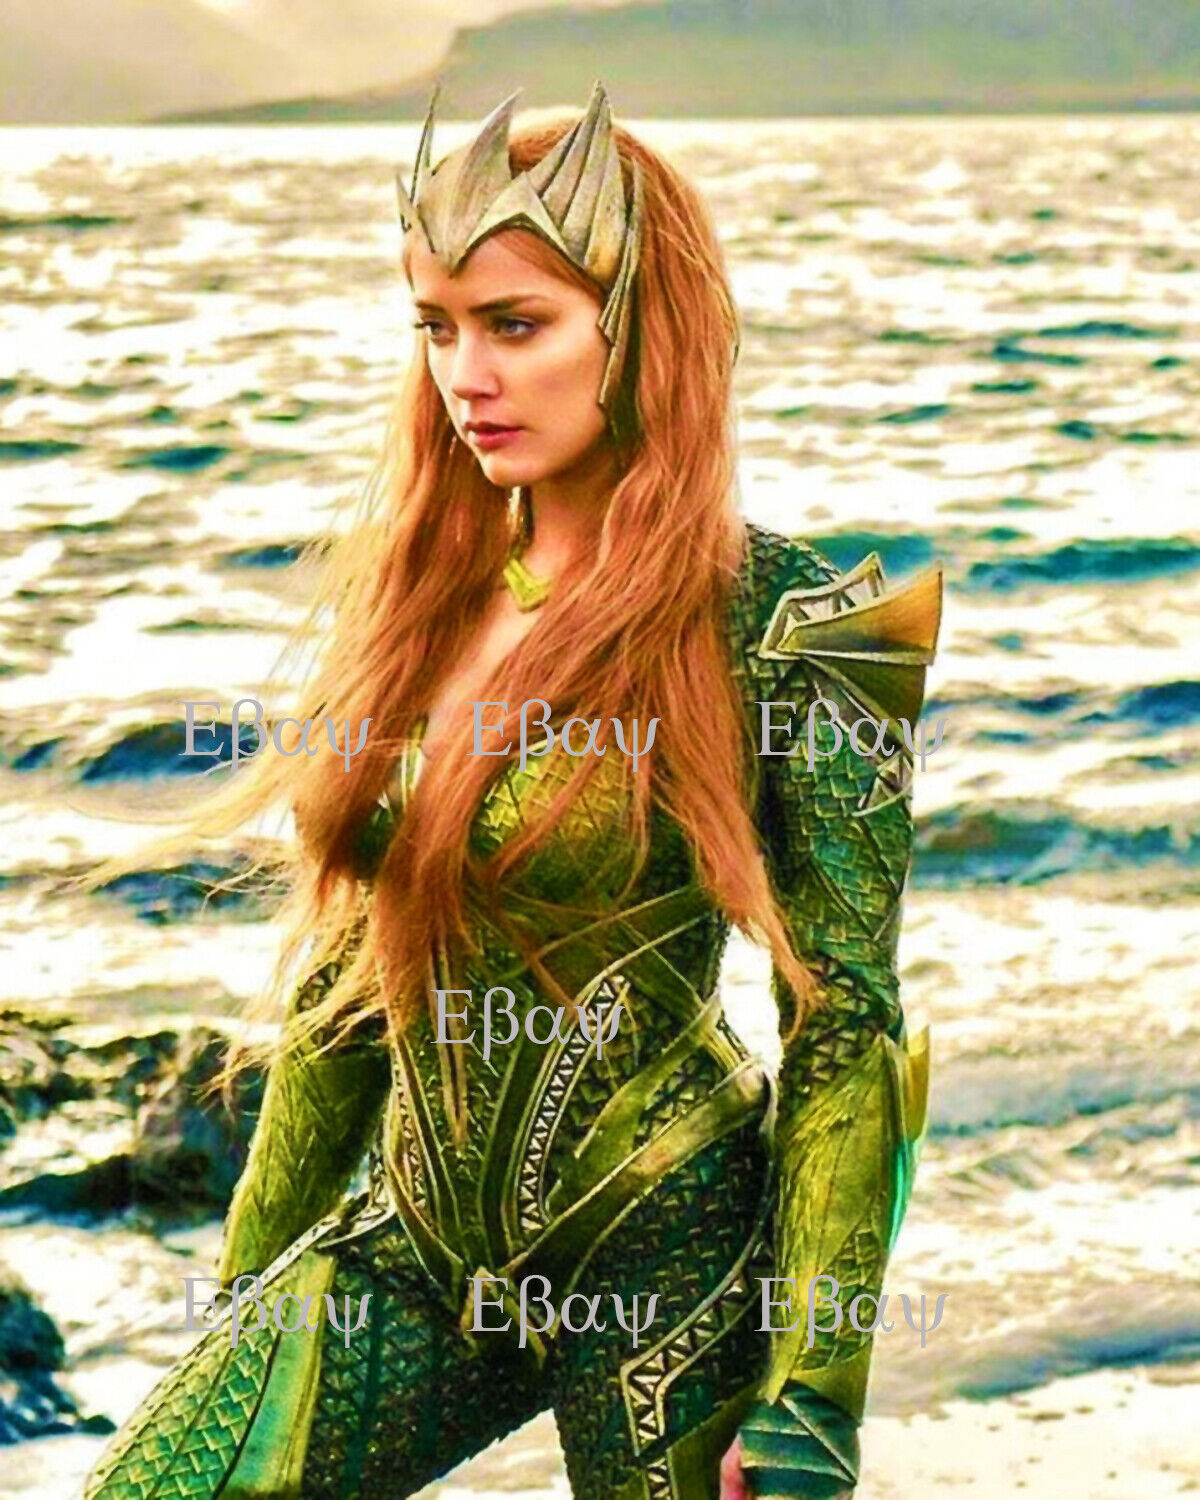 Amber Heard - Aquaman Actress 8X10 Photo Reprint